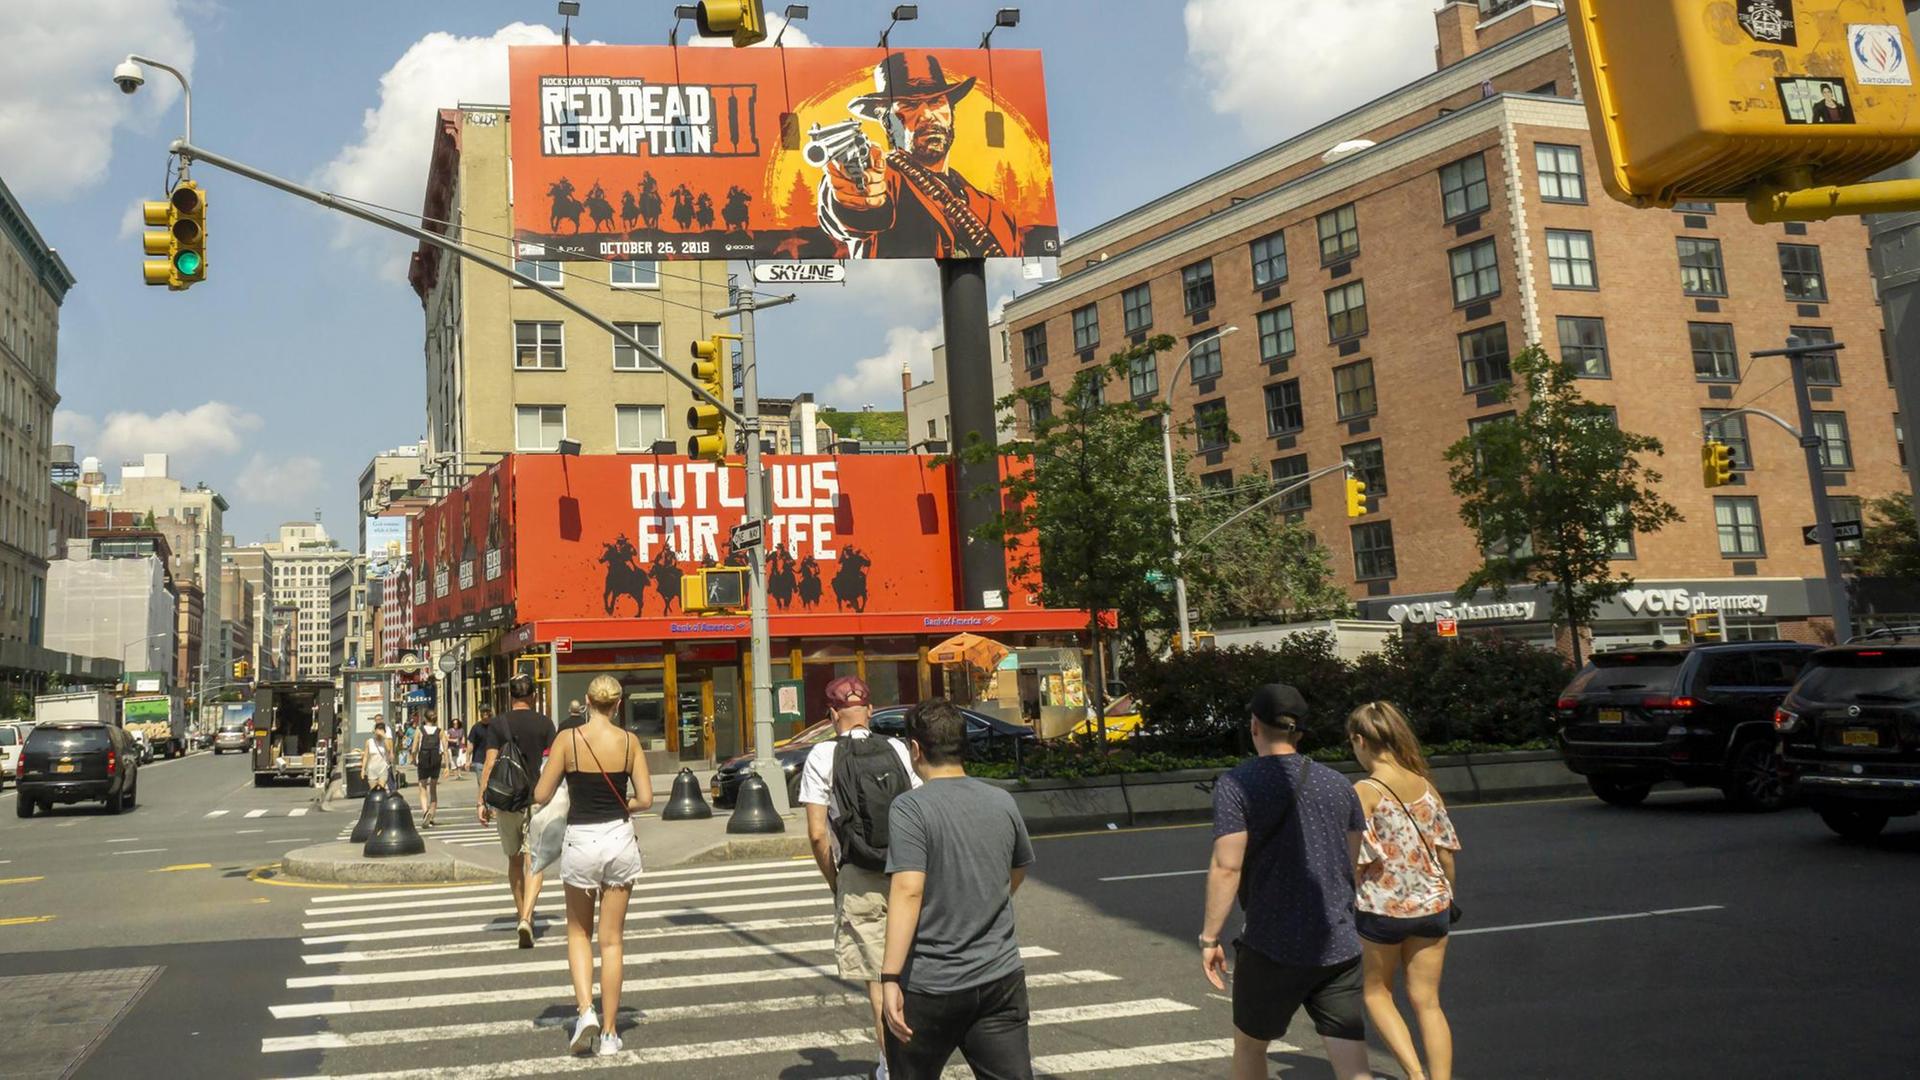 Passanten laufen über einen Zebrastreifen, vor ihnen sind zwei große Plakate zu sehen, auf denen das Computerspiel "Red Dead Redemption 2" beworben wird